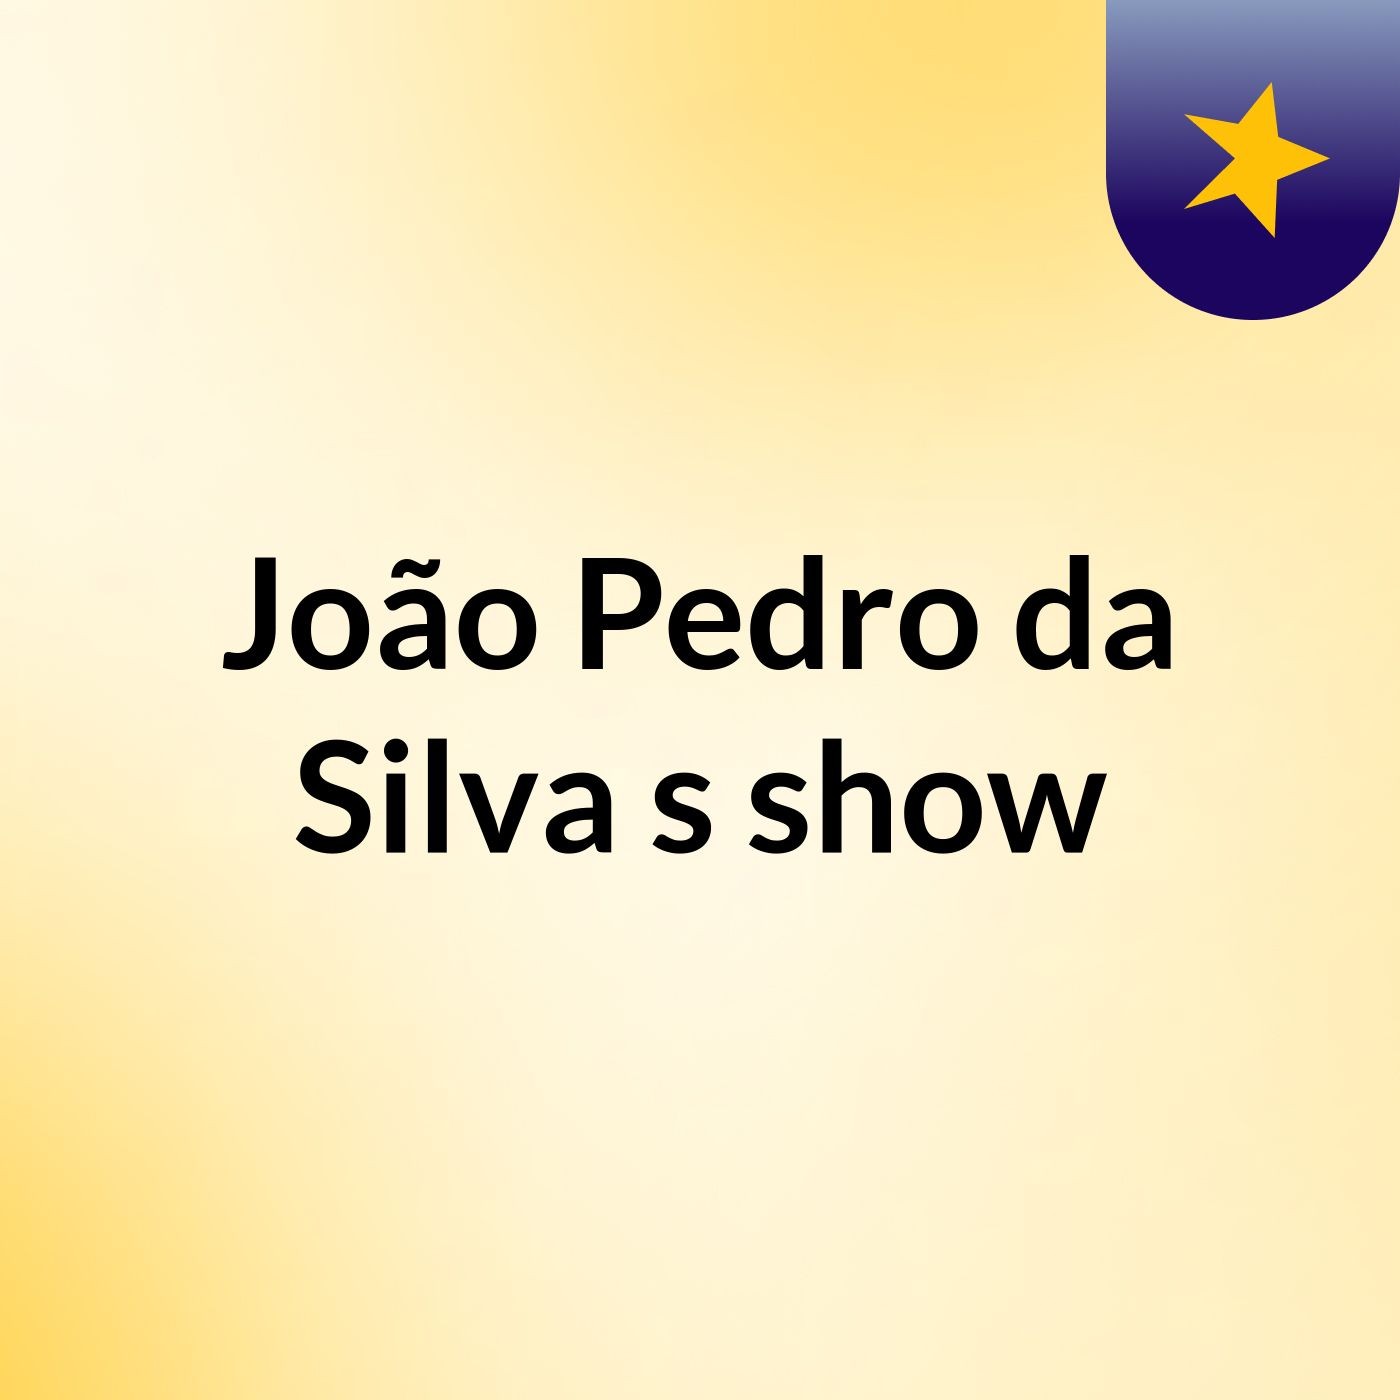 João Pedro da Silva's show